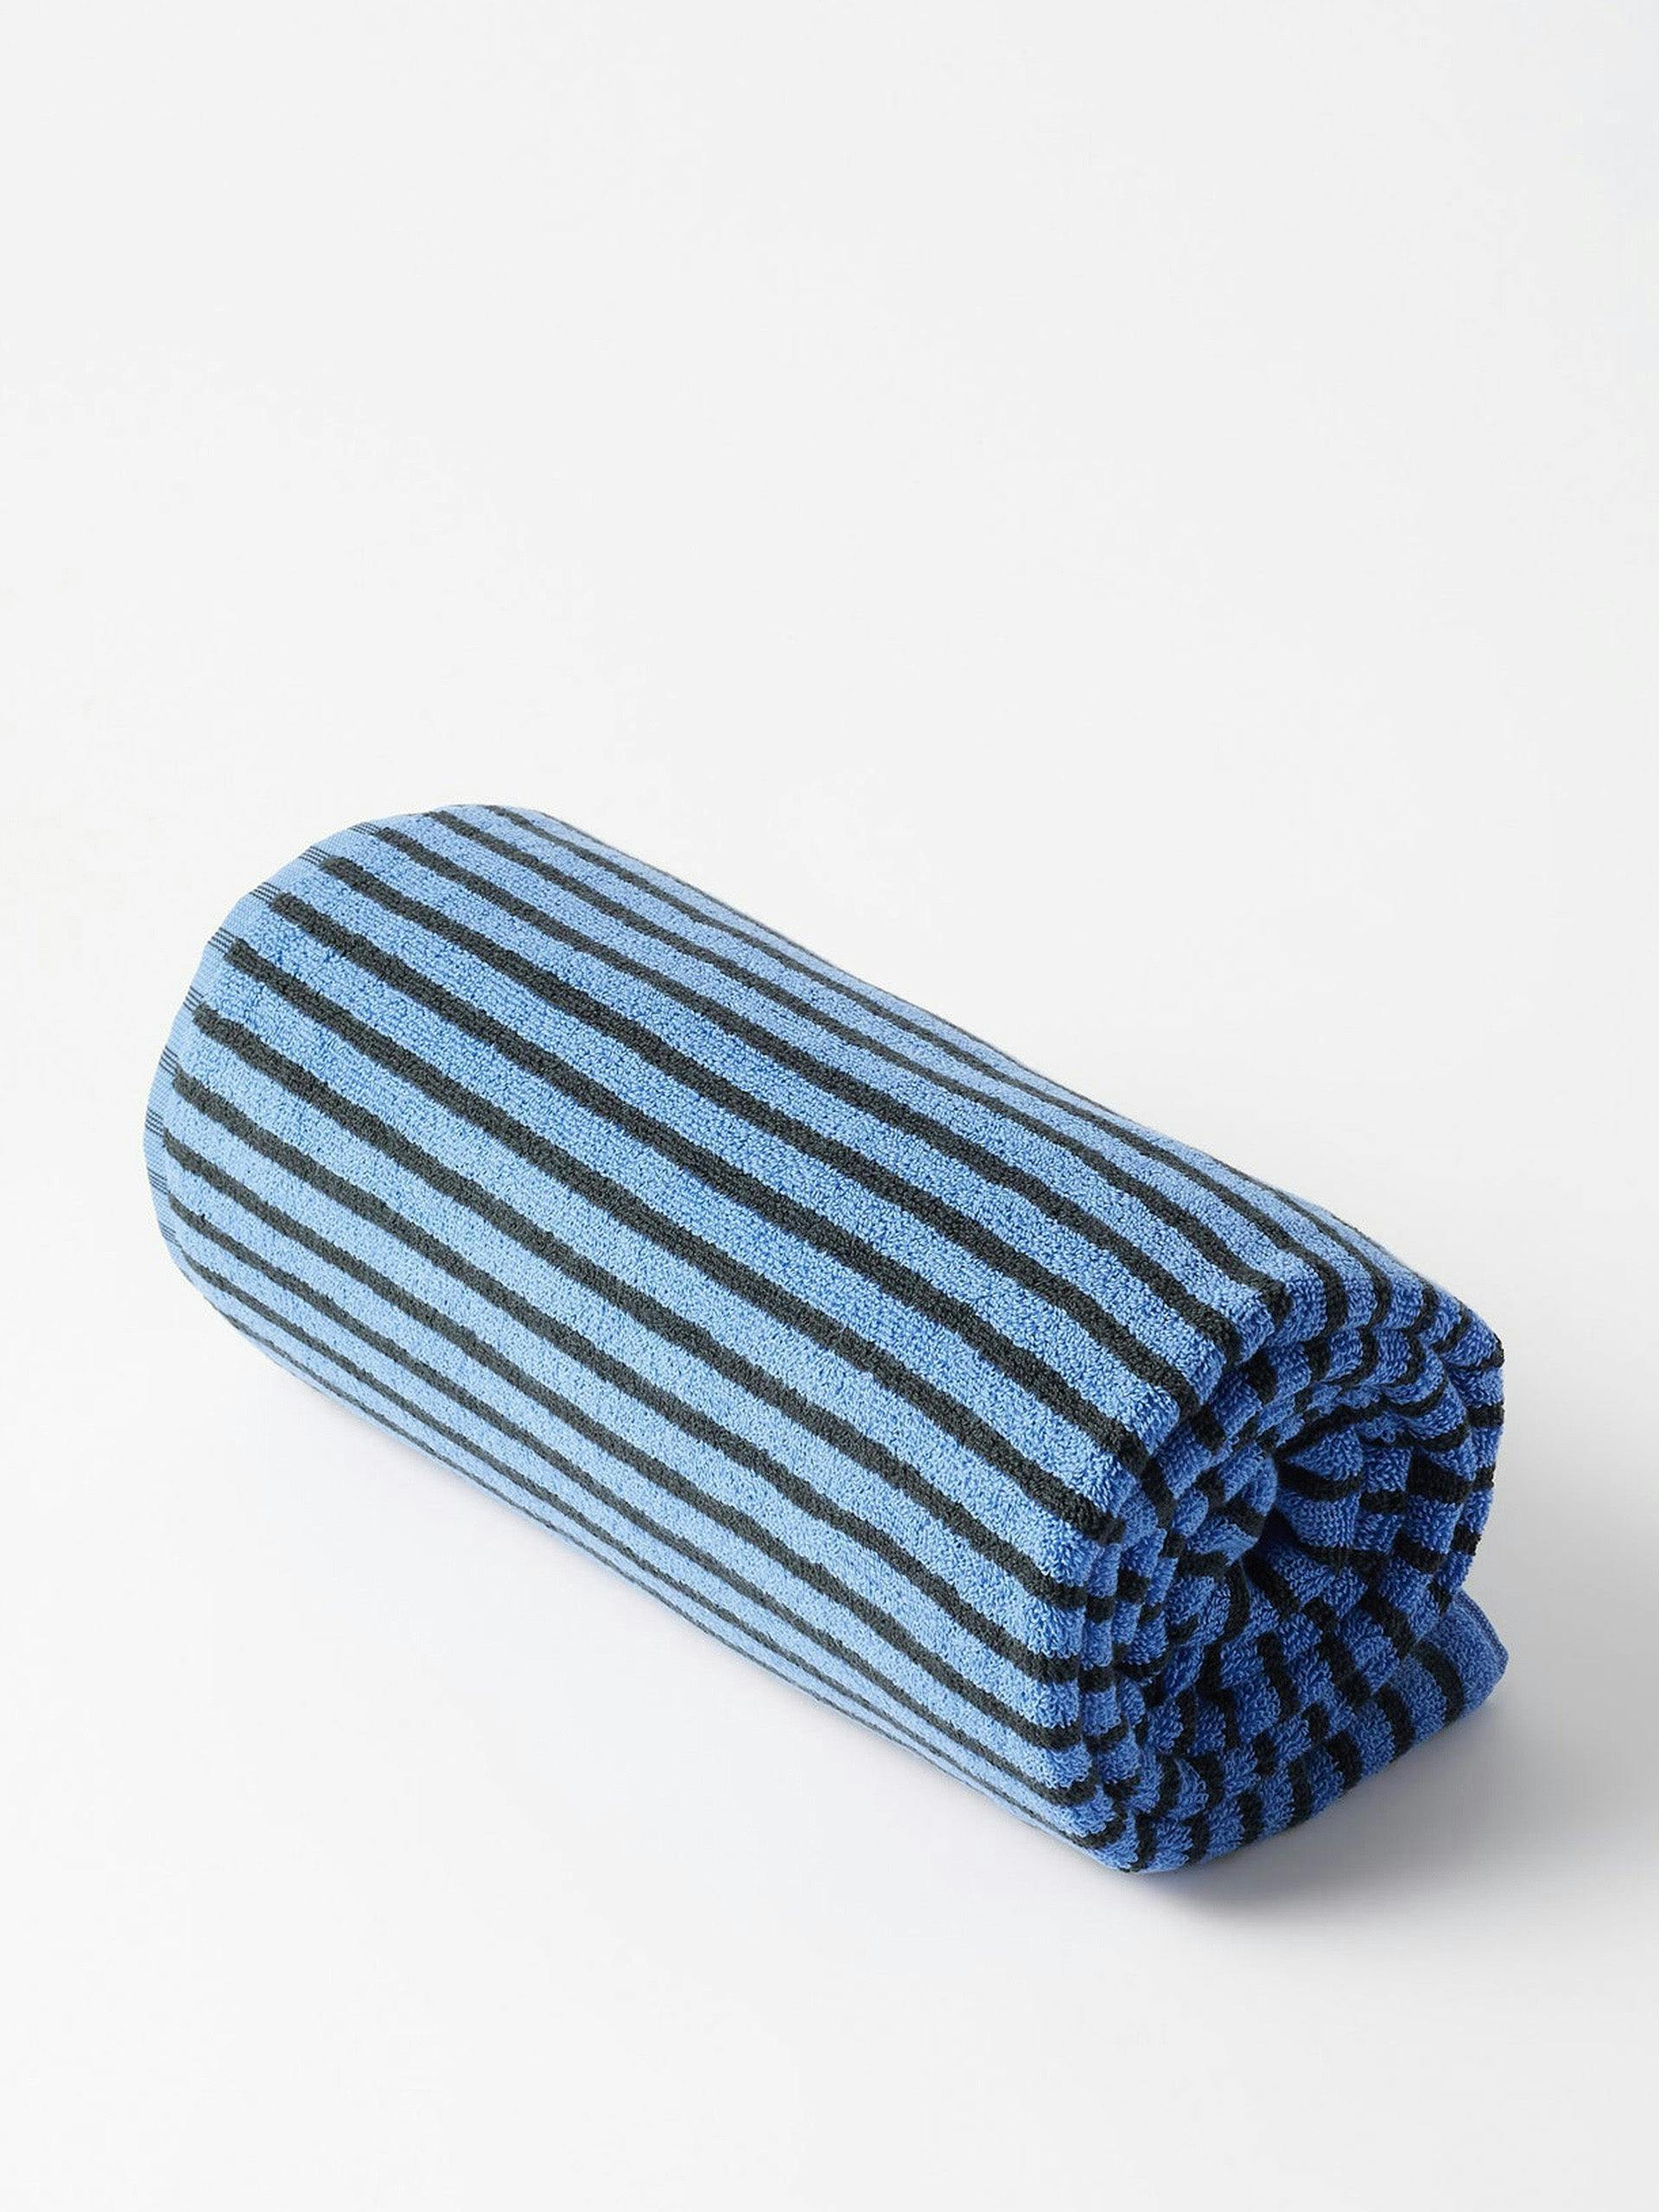 Blue striped bath towel